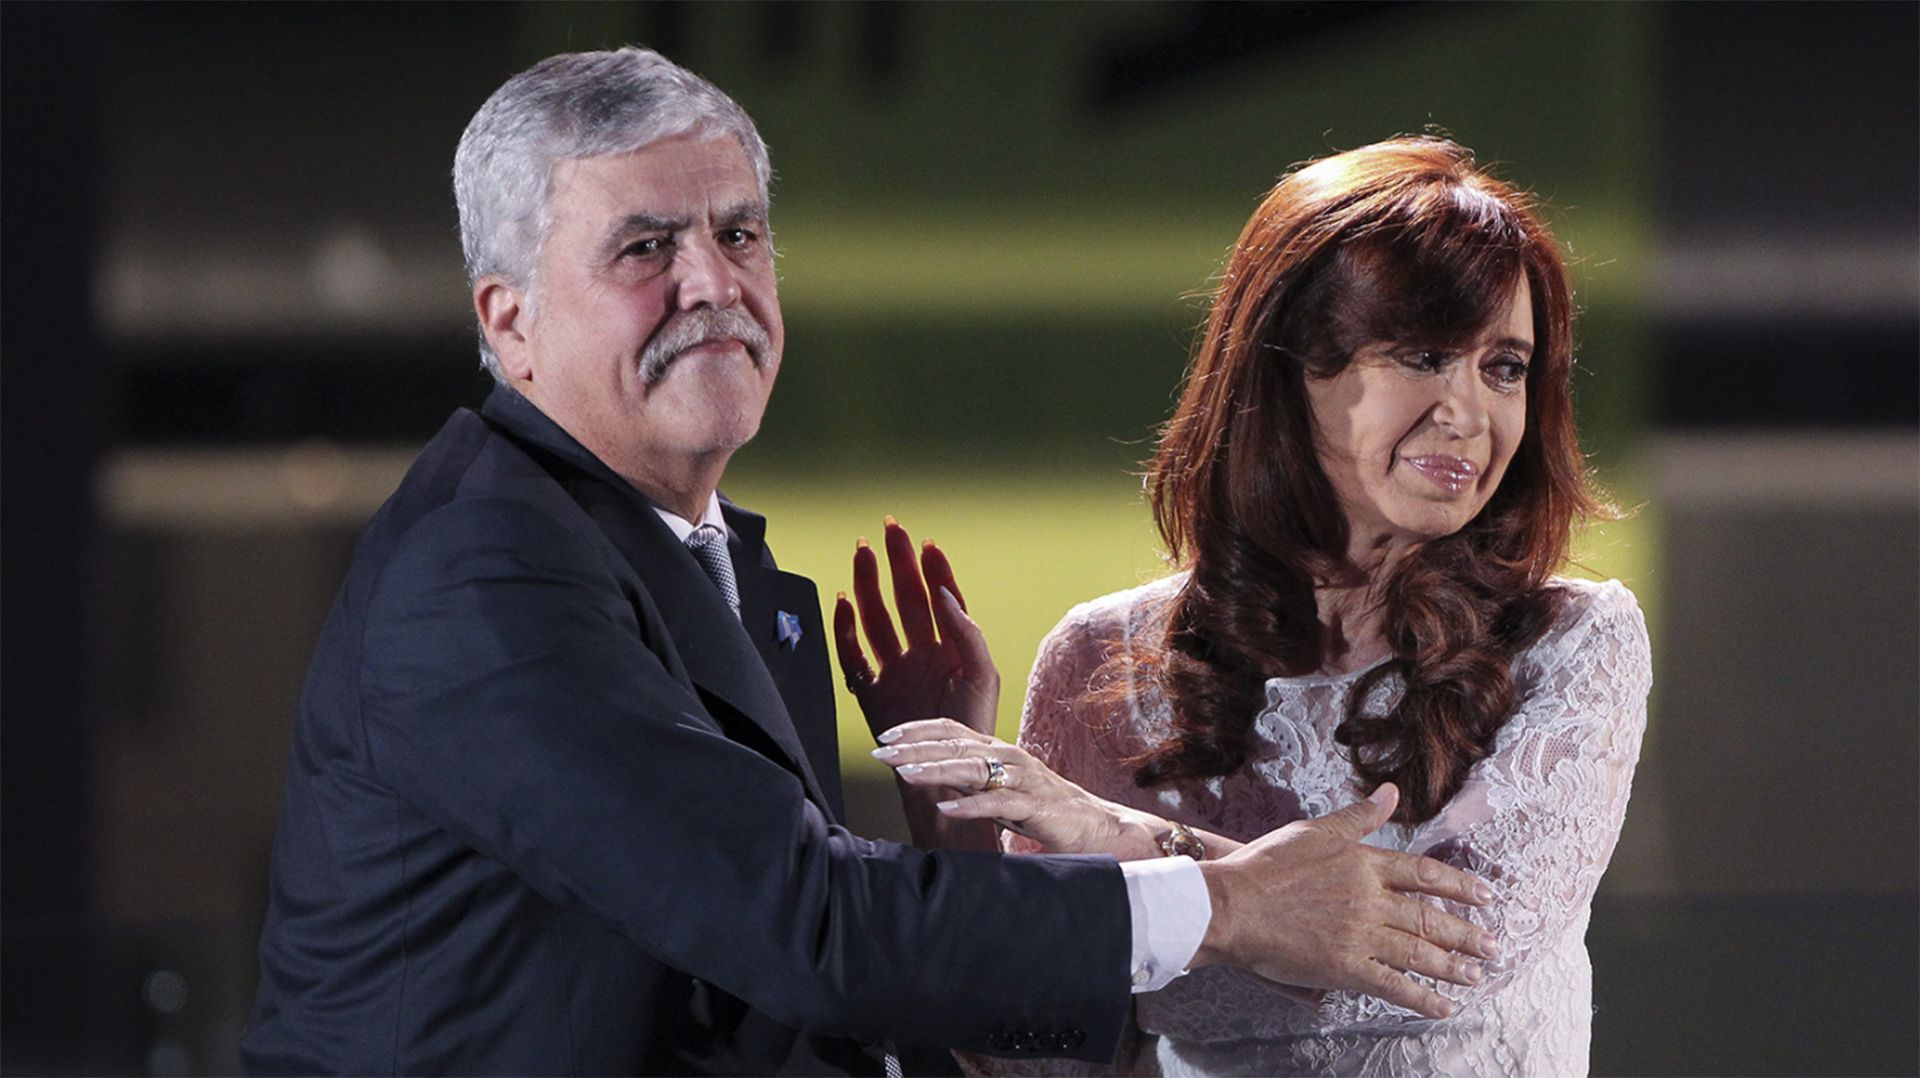 Alessandra Minnicelli dijo que le preguntaría a Cristina Kirchner: “¿Por qué no lo cuidó más a Julio?”(Reuters)